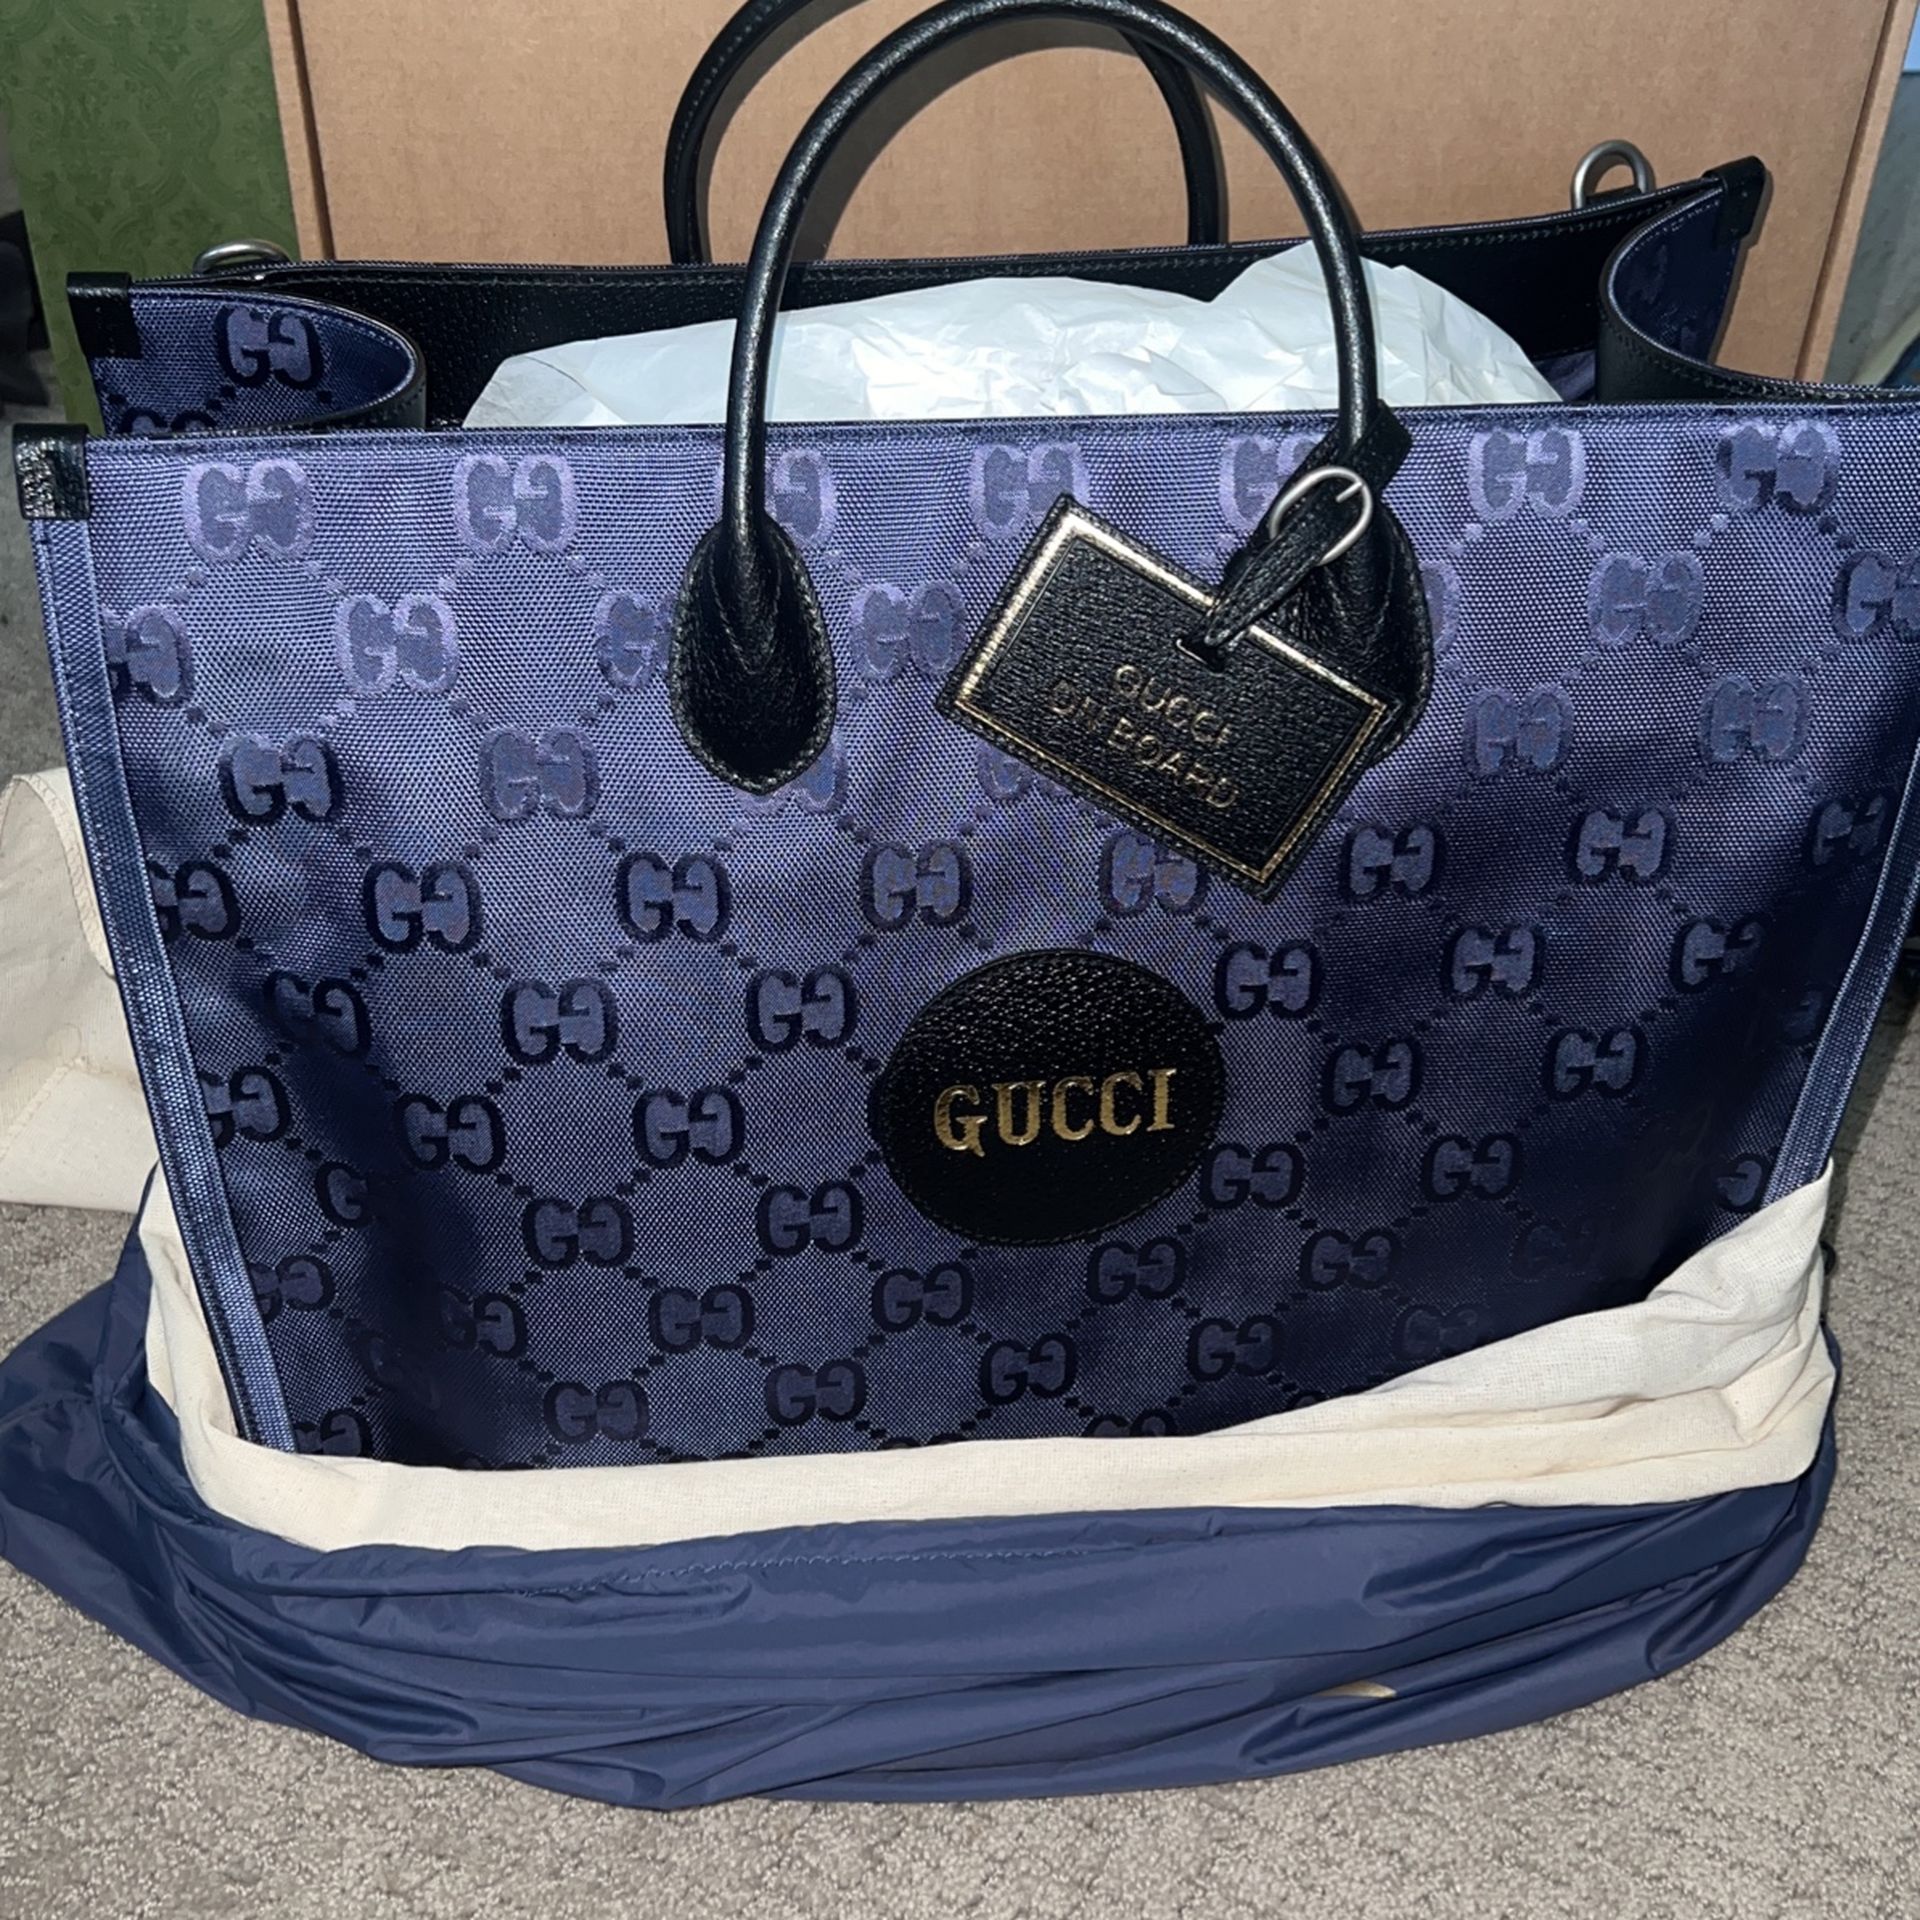 Gucci Bag Exclusive Gucci Tote 